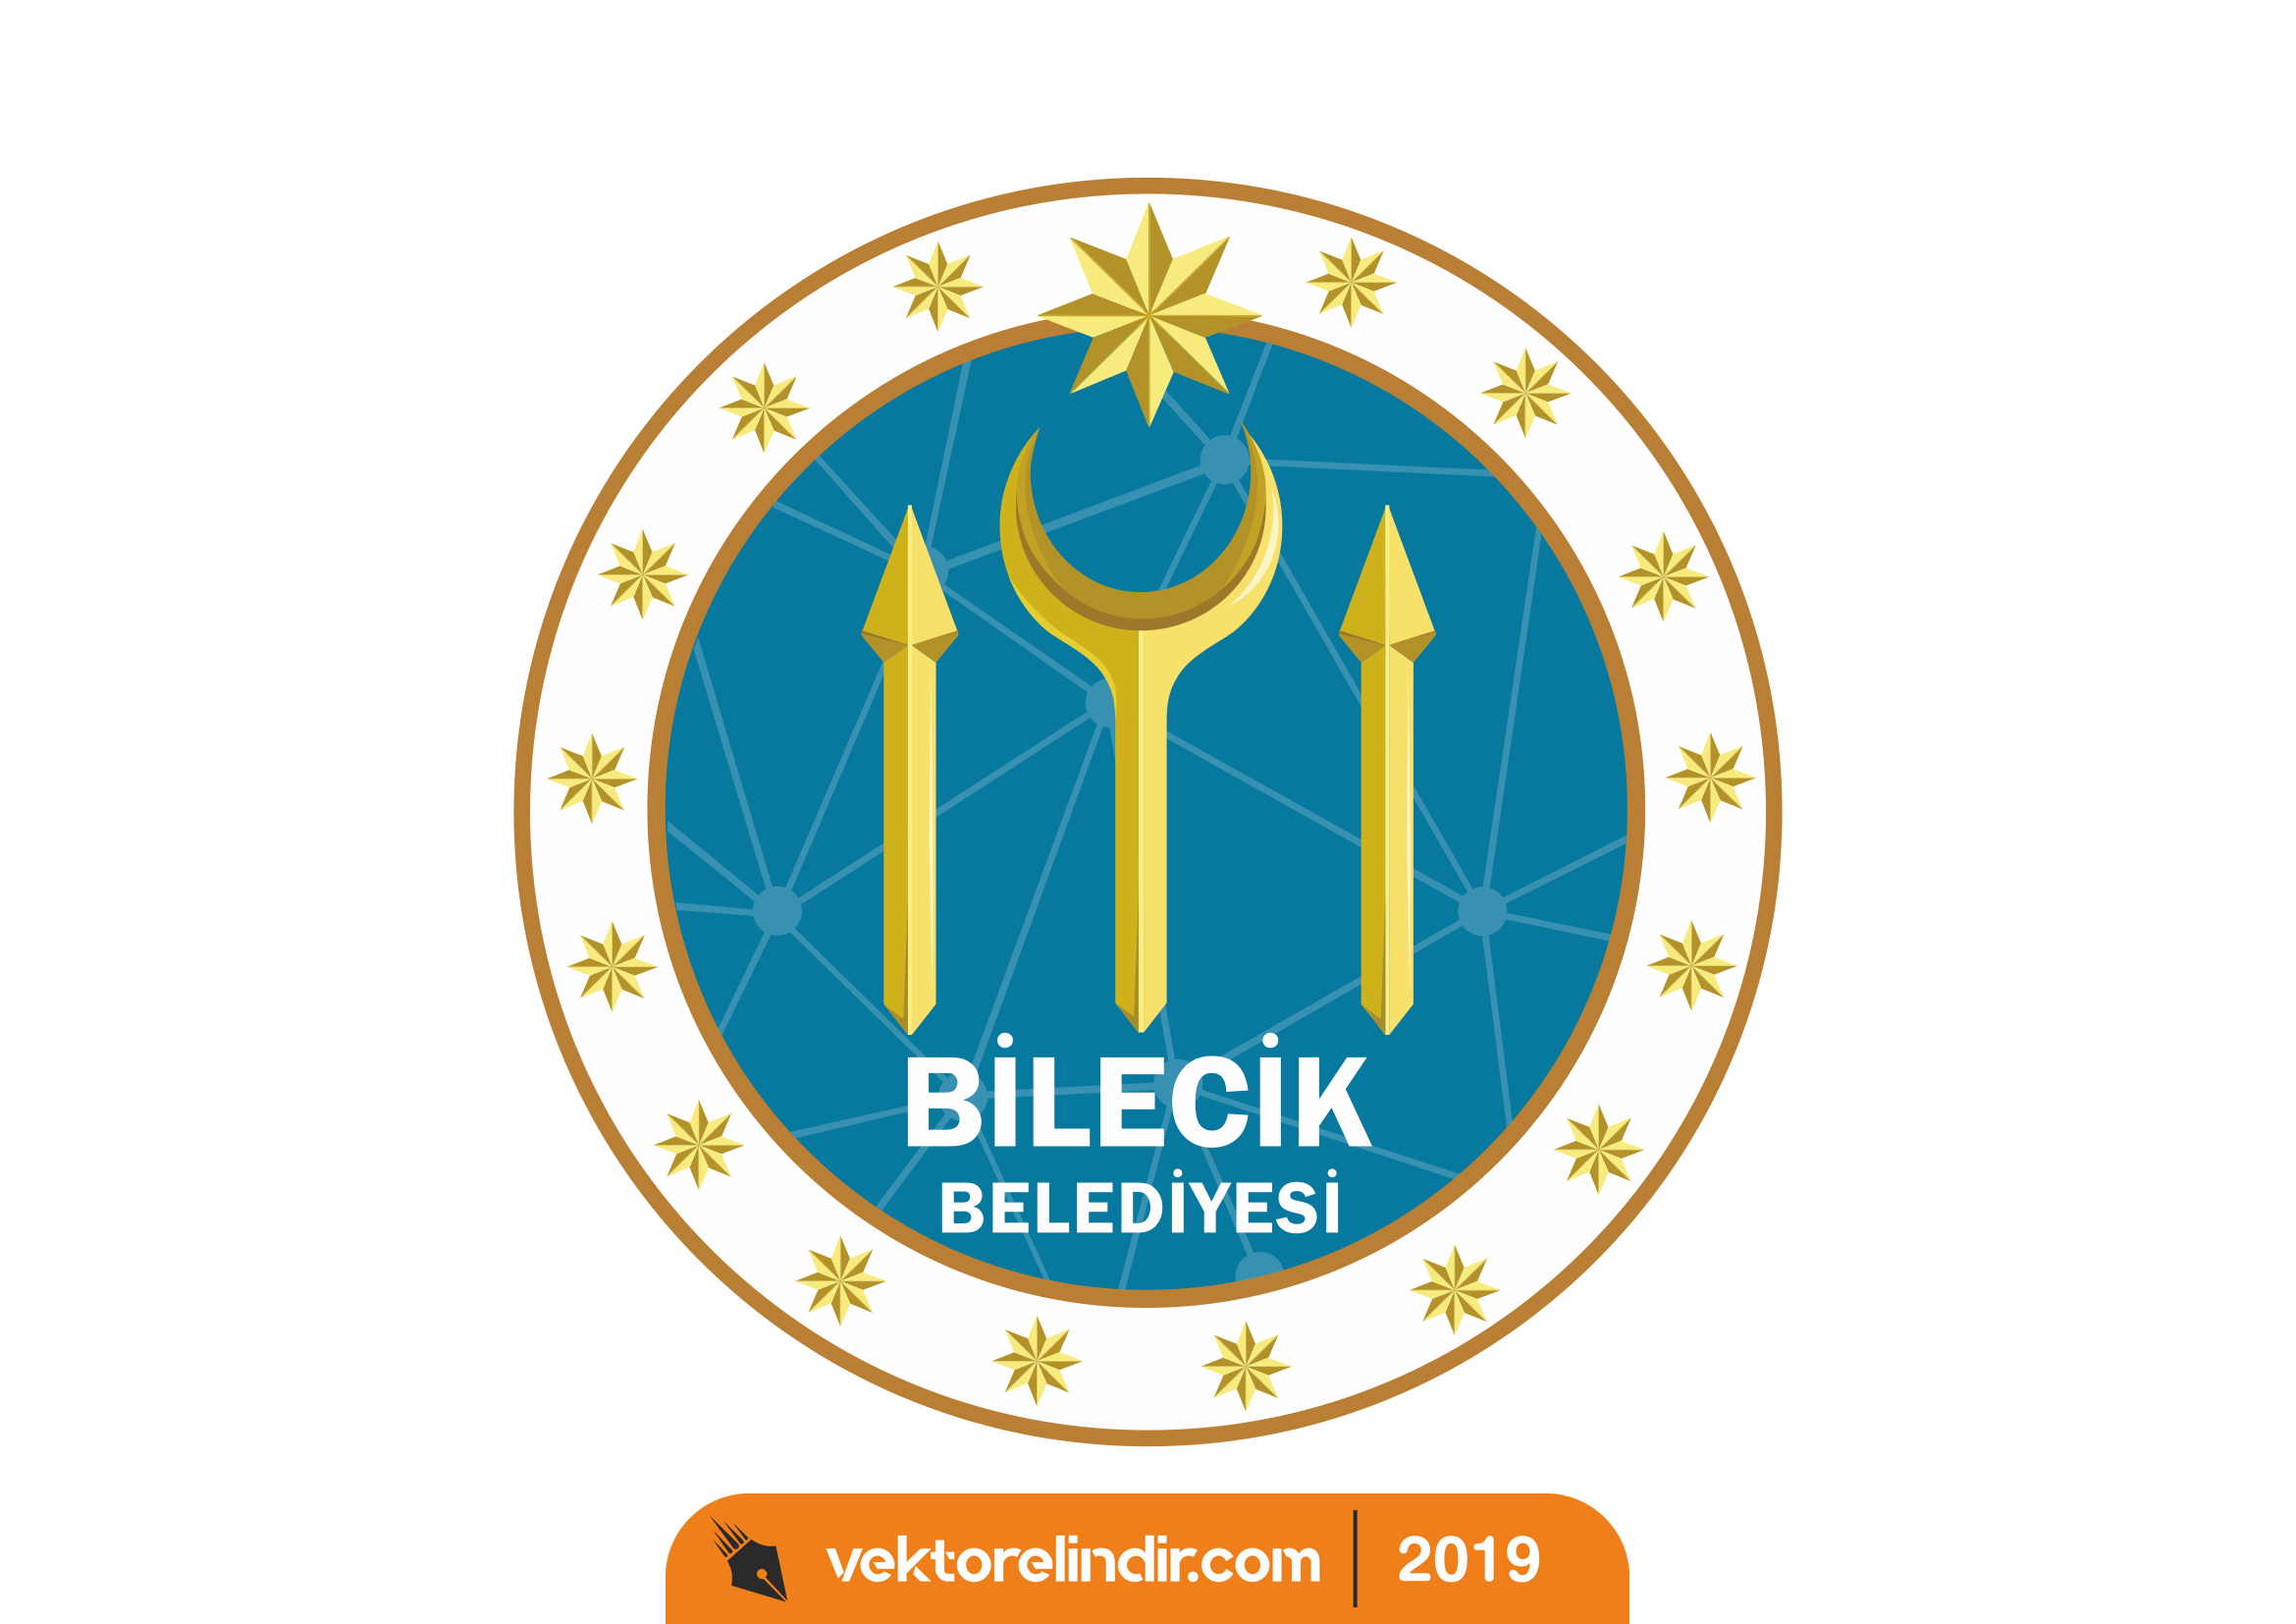 Bilecik Belediyesi Yeni Logo, Amblem